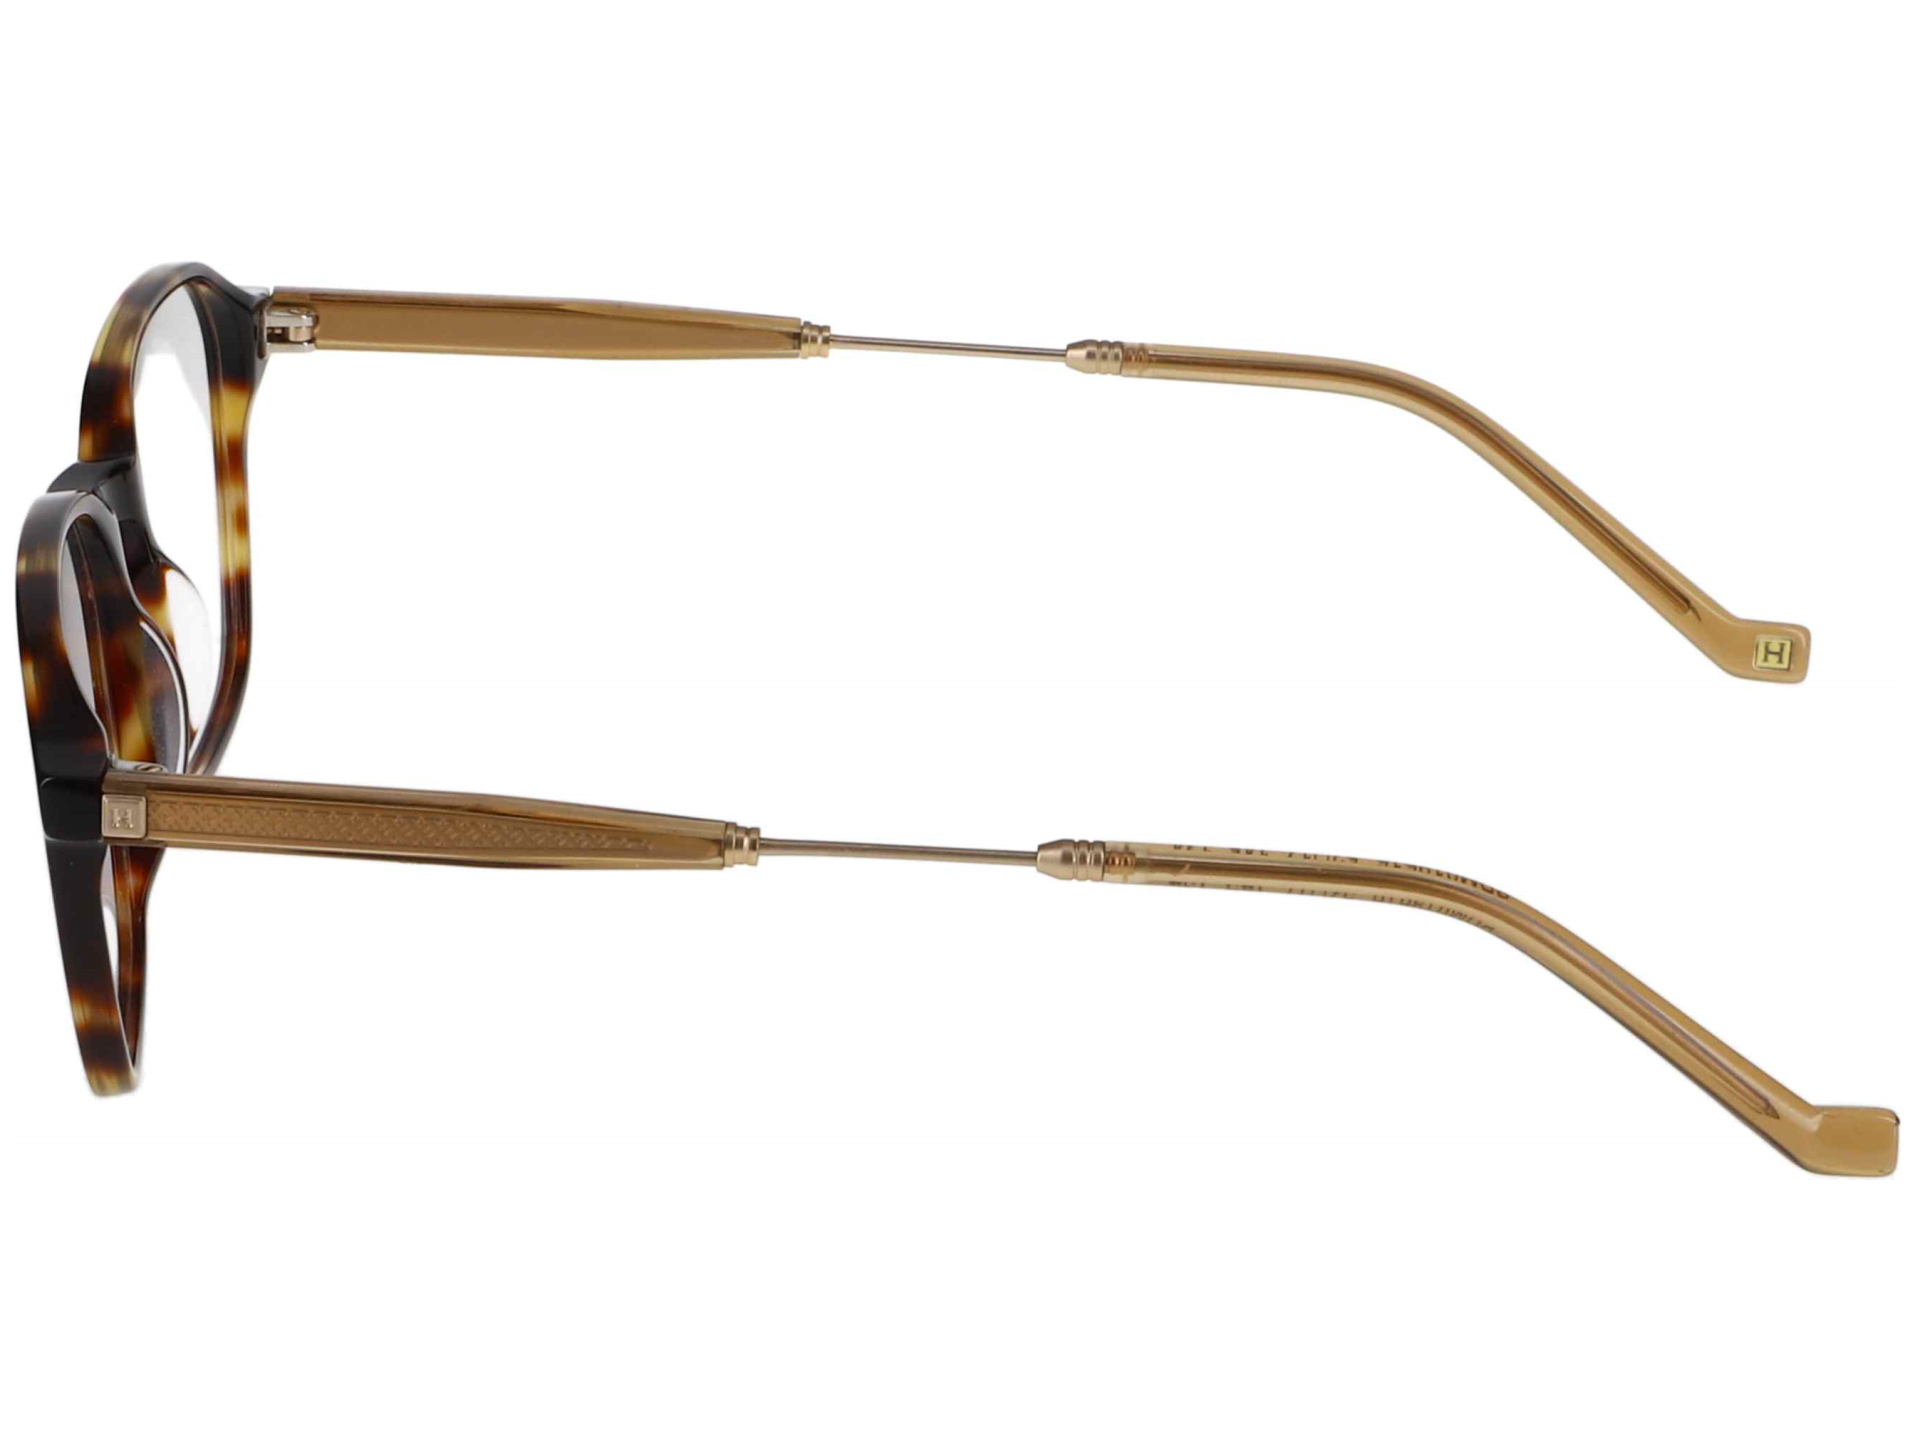 Das Bild zeigt die Korrektionsbrille 331 134 von der Marke Hackett in braun.